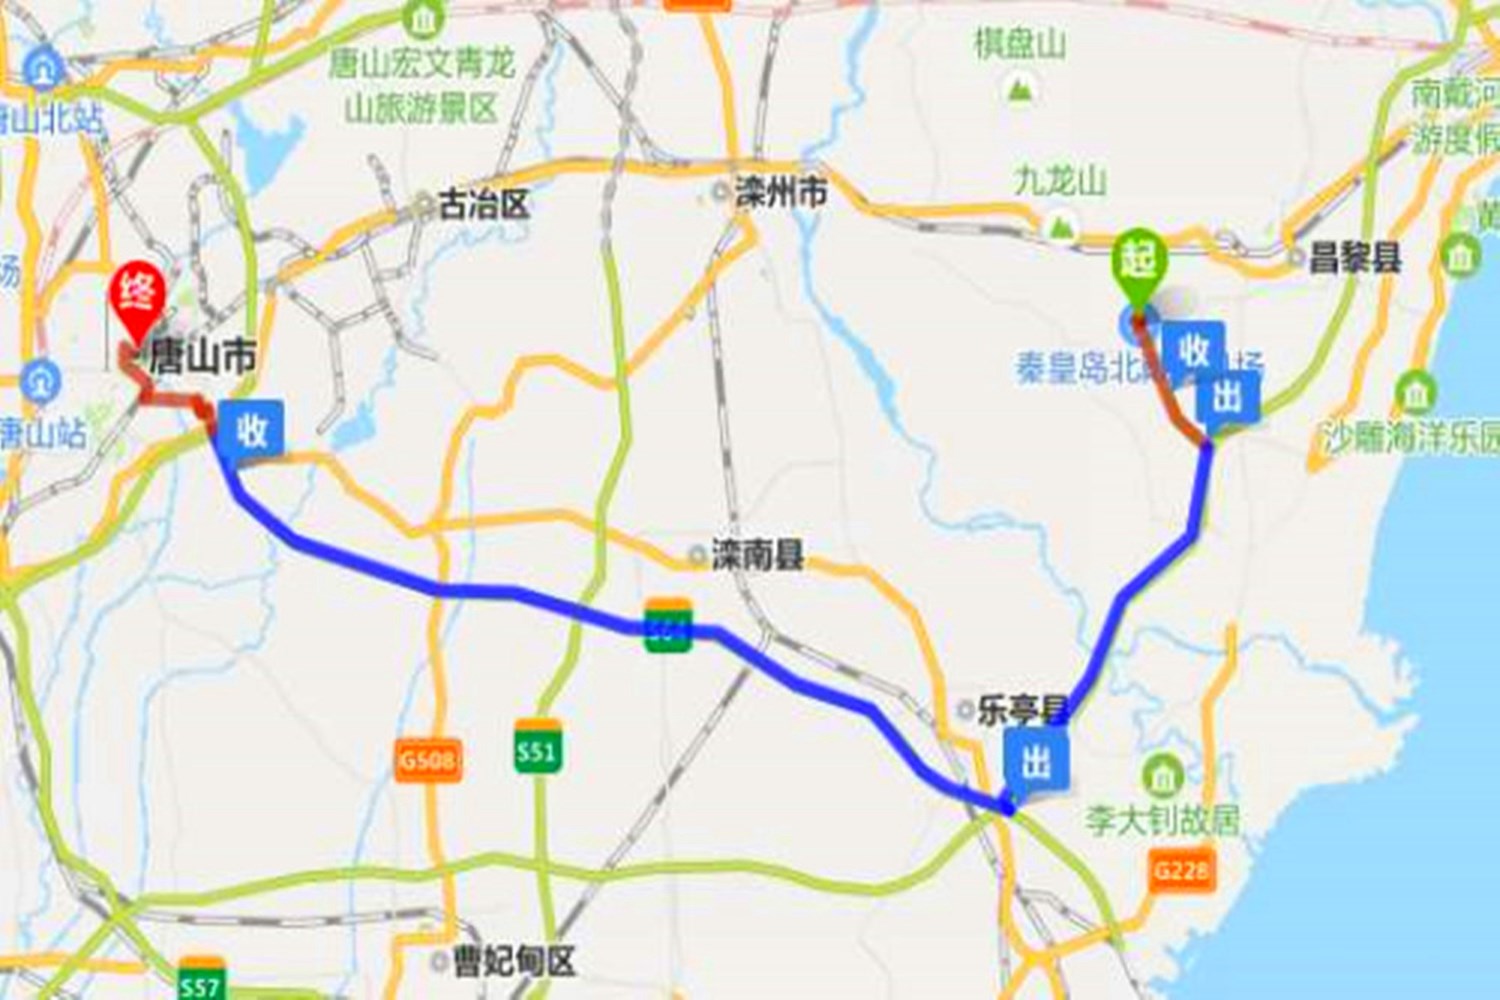 河北建一条连接京津的大通道,全长约468公里,预计2022年建成